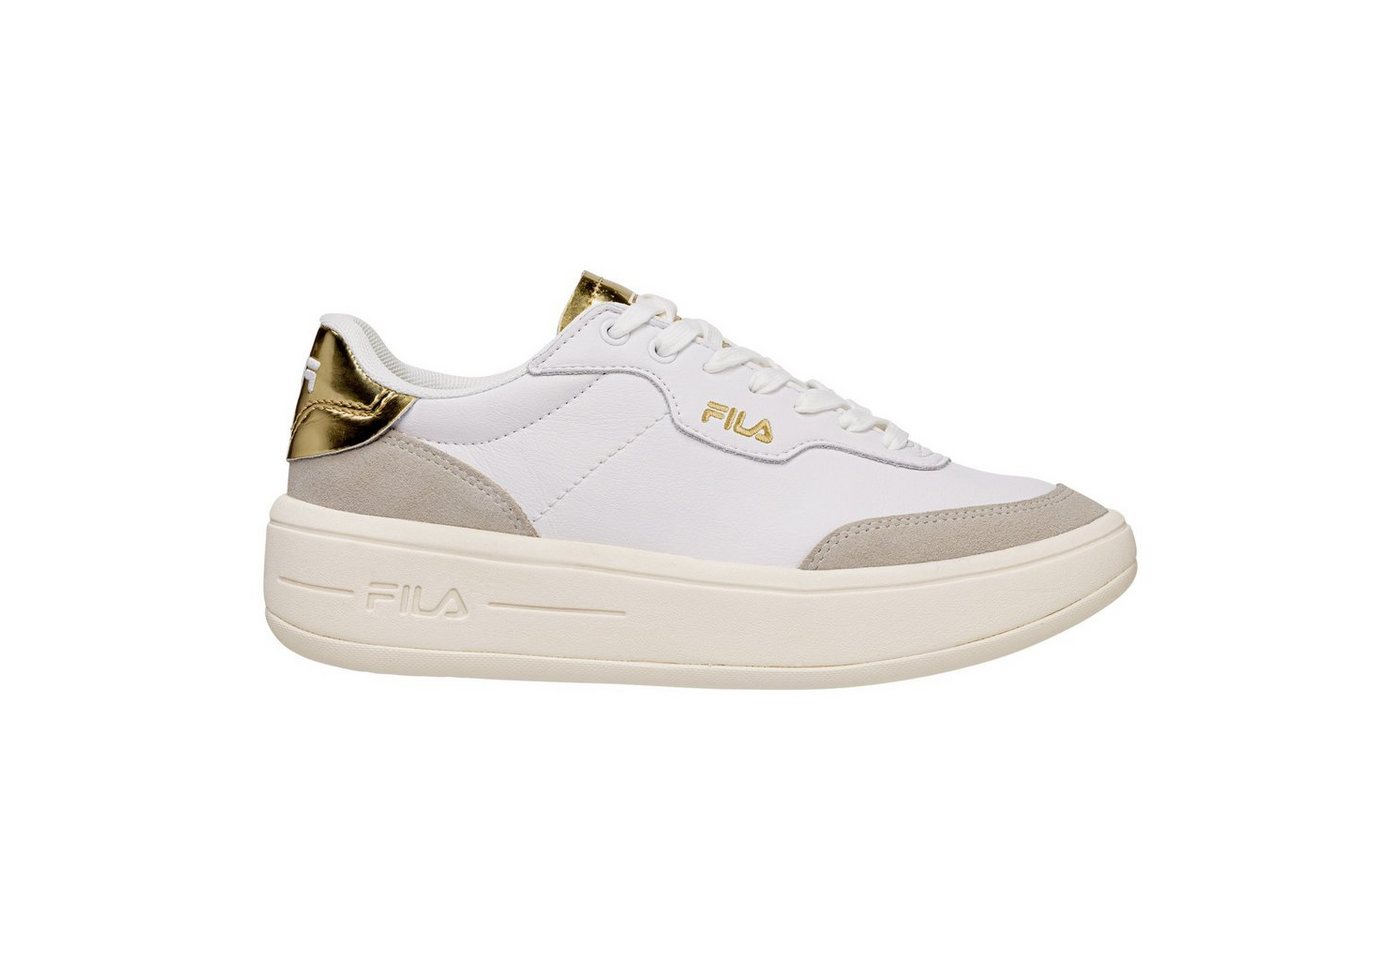 Fila Premium F Wmn Sneaker mit goldenen Details an Ferse und Zunge von Fila